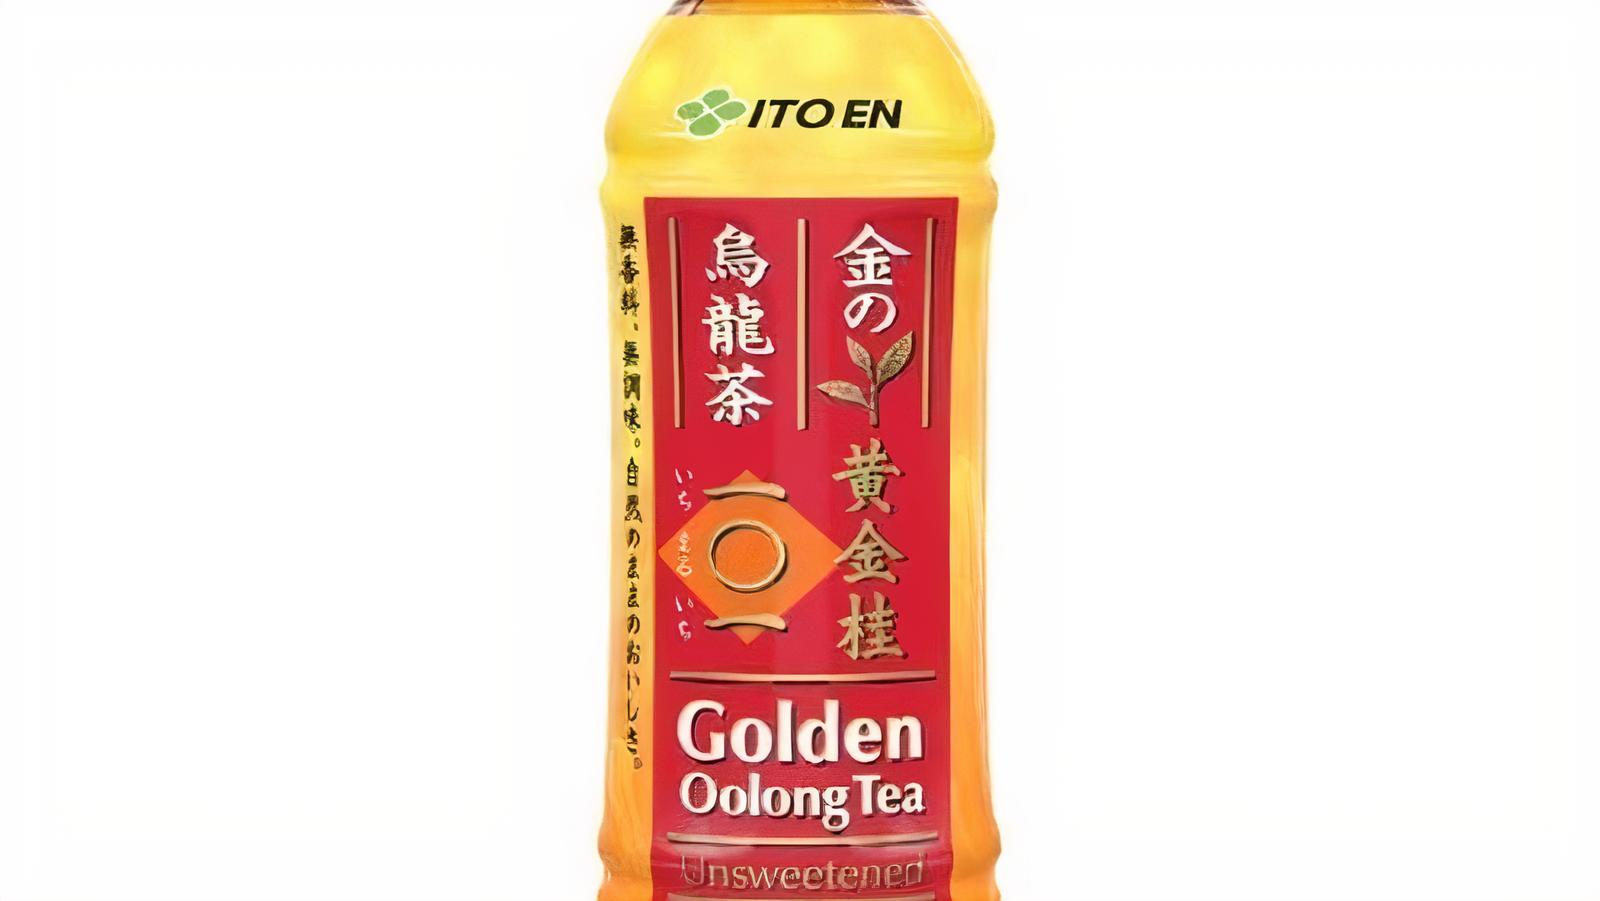 Itoen Golden Oolong Tea